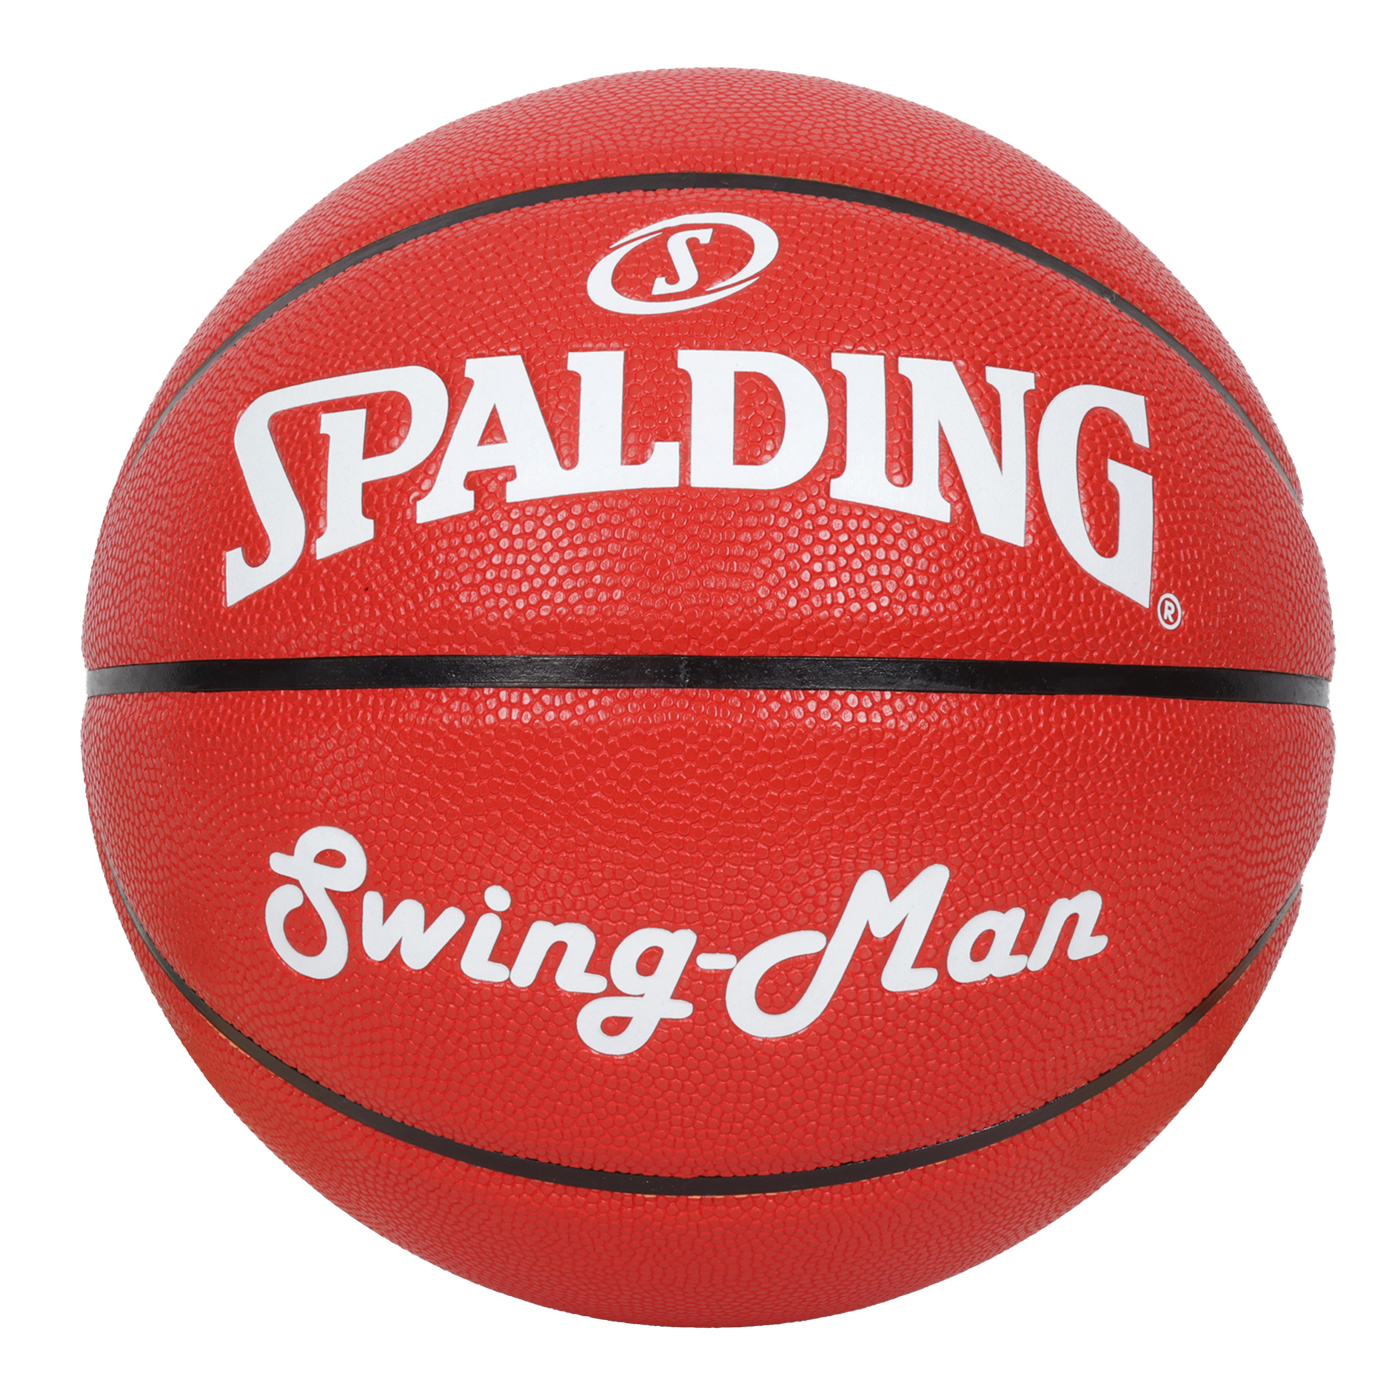 SPALDING Swingman系列#7合成皮籃球  SPB1131B7